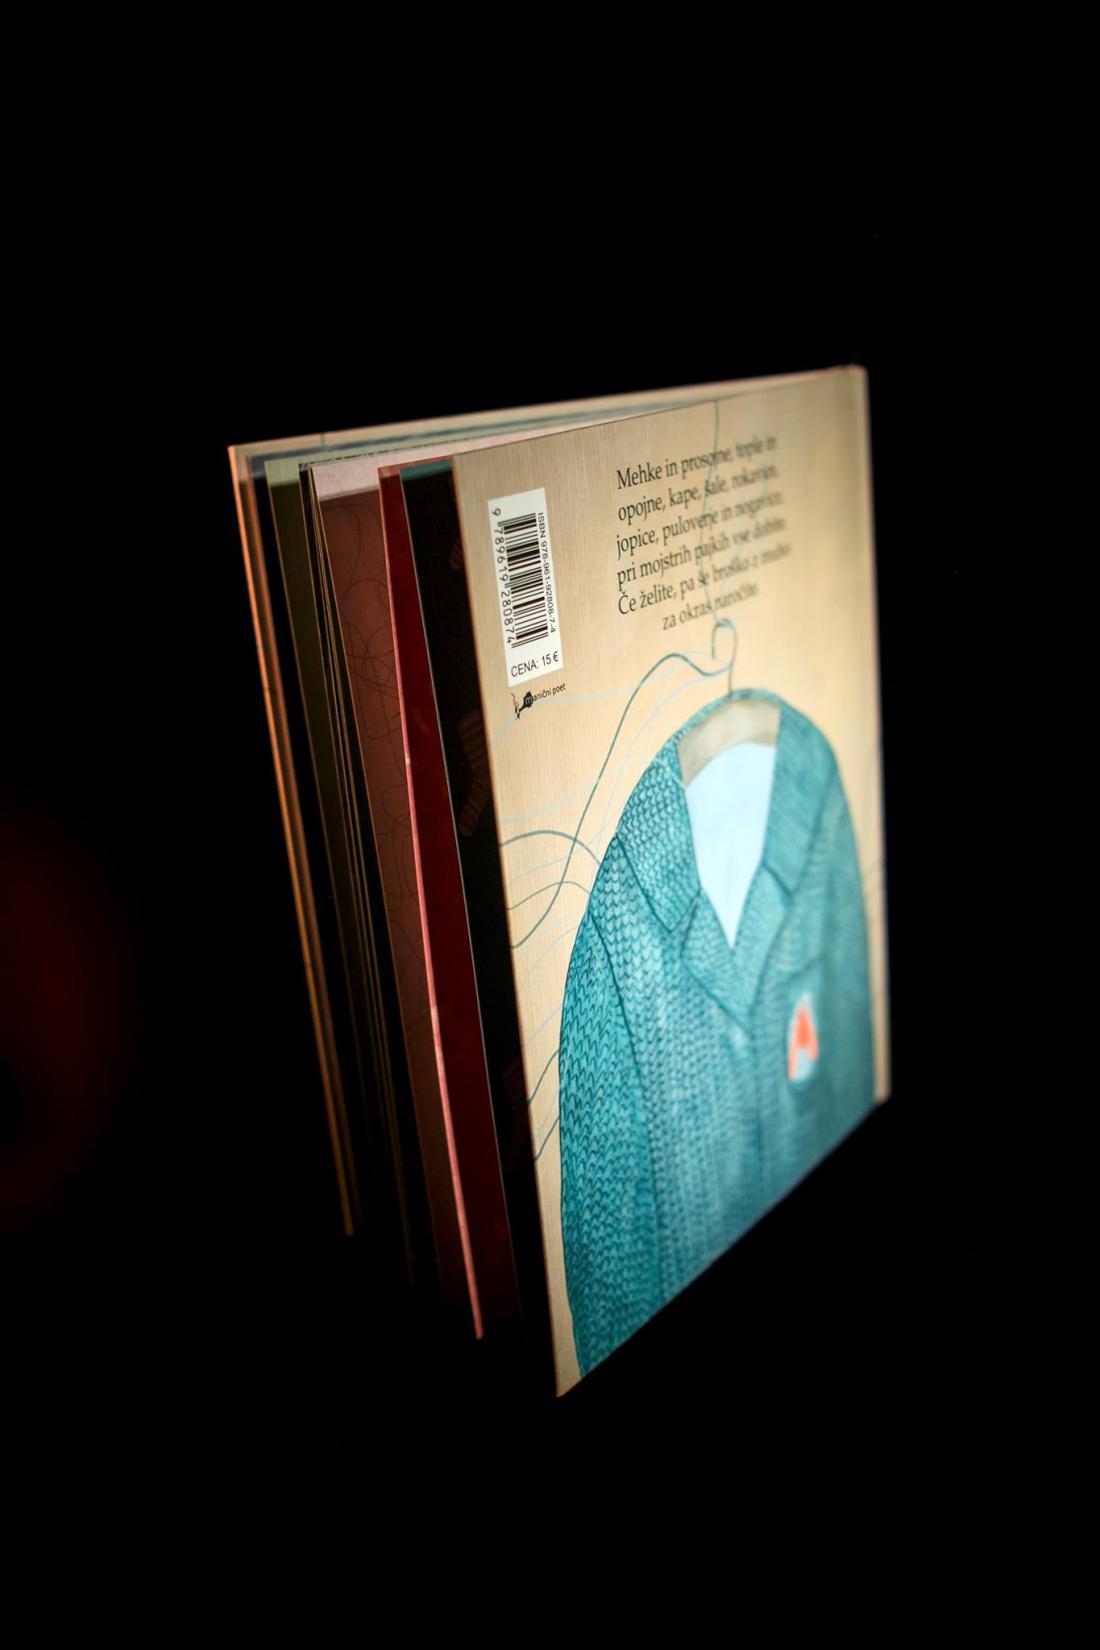 Knjiga Mojstri pajki , ilustrirana knjiga, ki je izšla pod založbo Manični poet, napisala jo je Nuša Komplet, Nea pa opremila z ilustracijami.